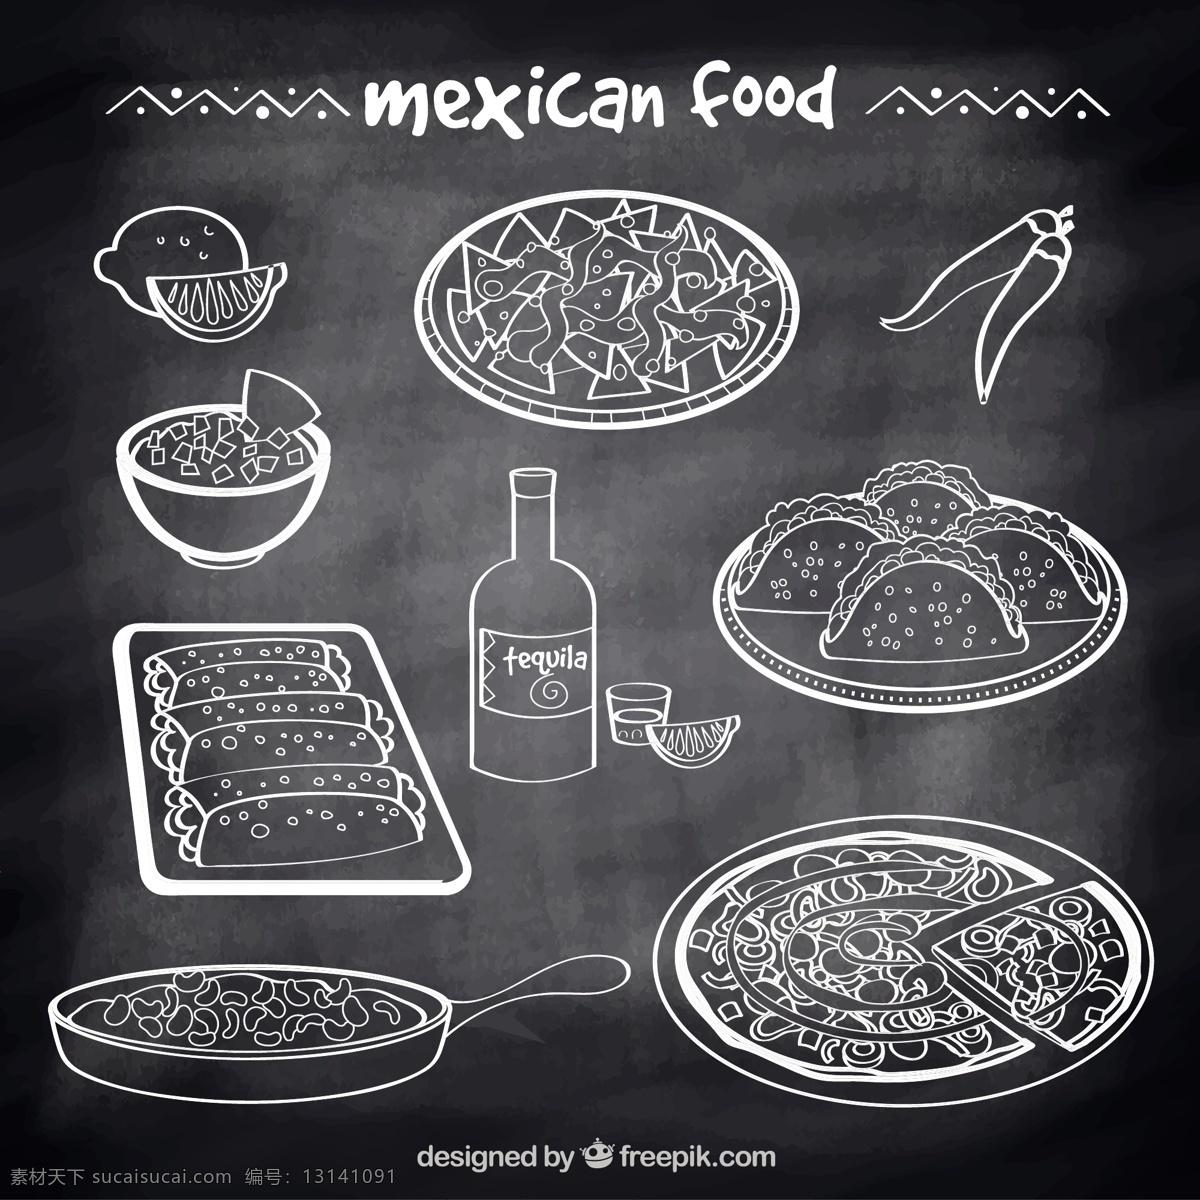 墨西哥食品 食品 菜单 手 餐厅 黑板 手绘 鸡 墨西哥 绘画 蔬菜 吃 番茄 辣椒 风格 饮食 膳食 抽纱 美食